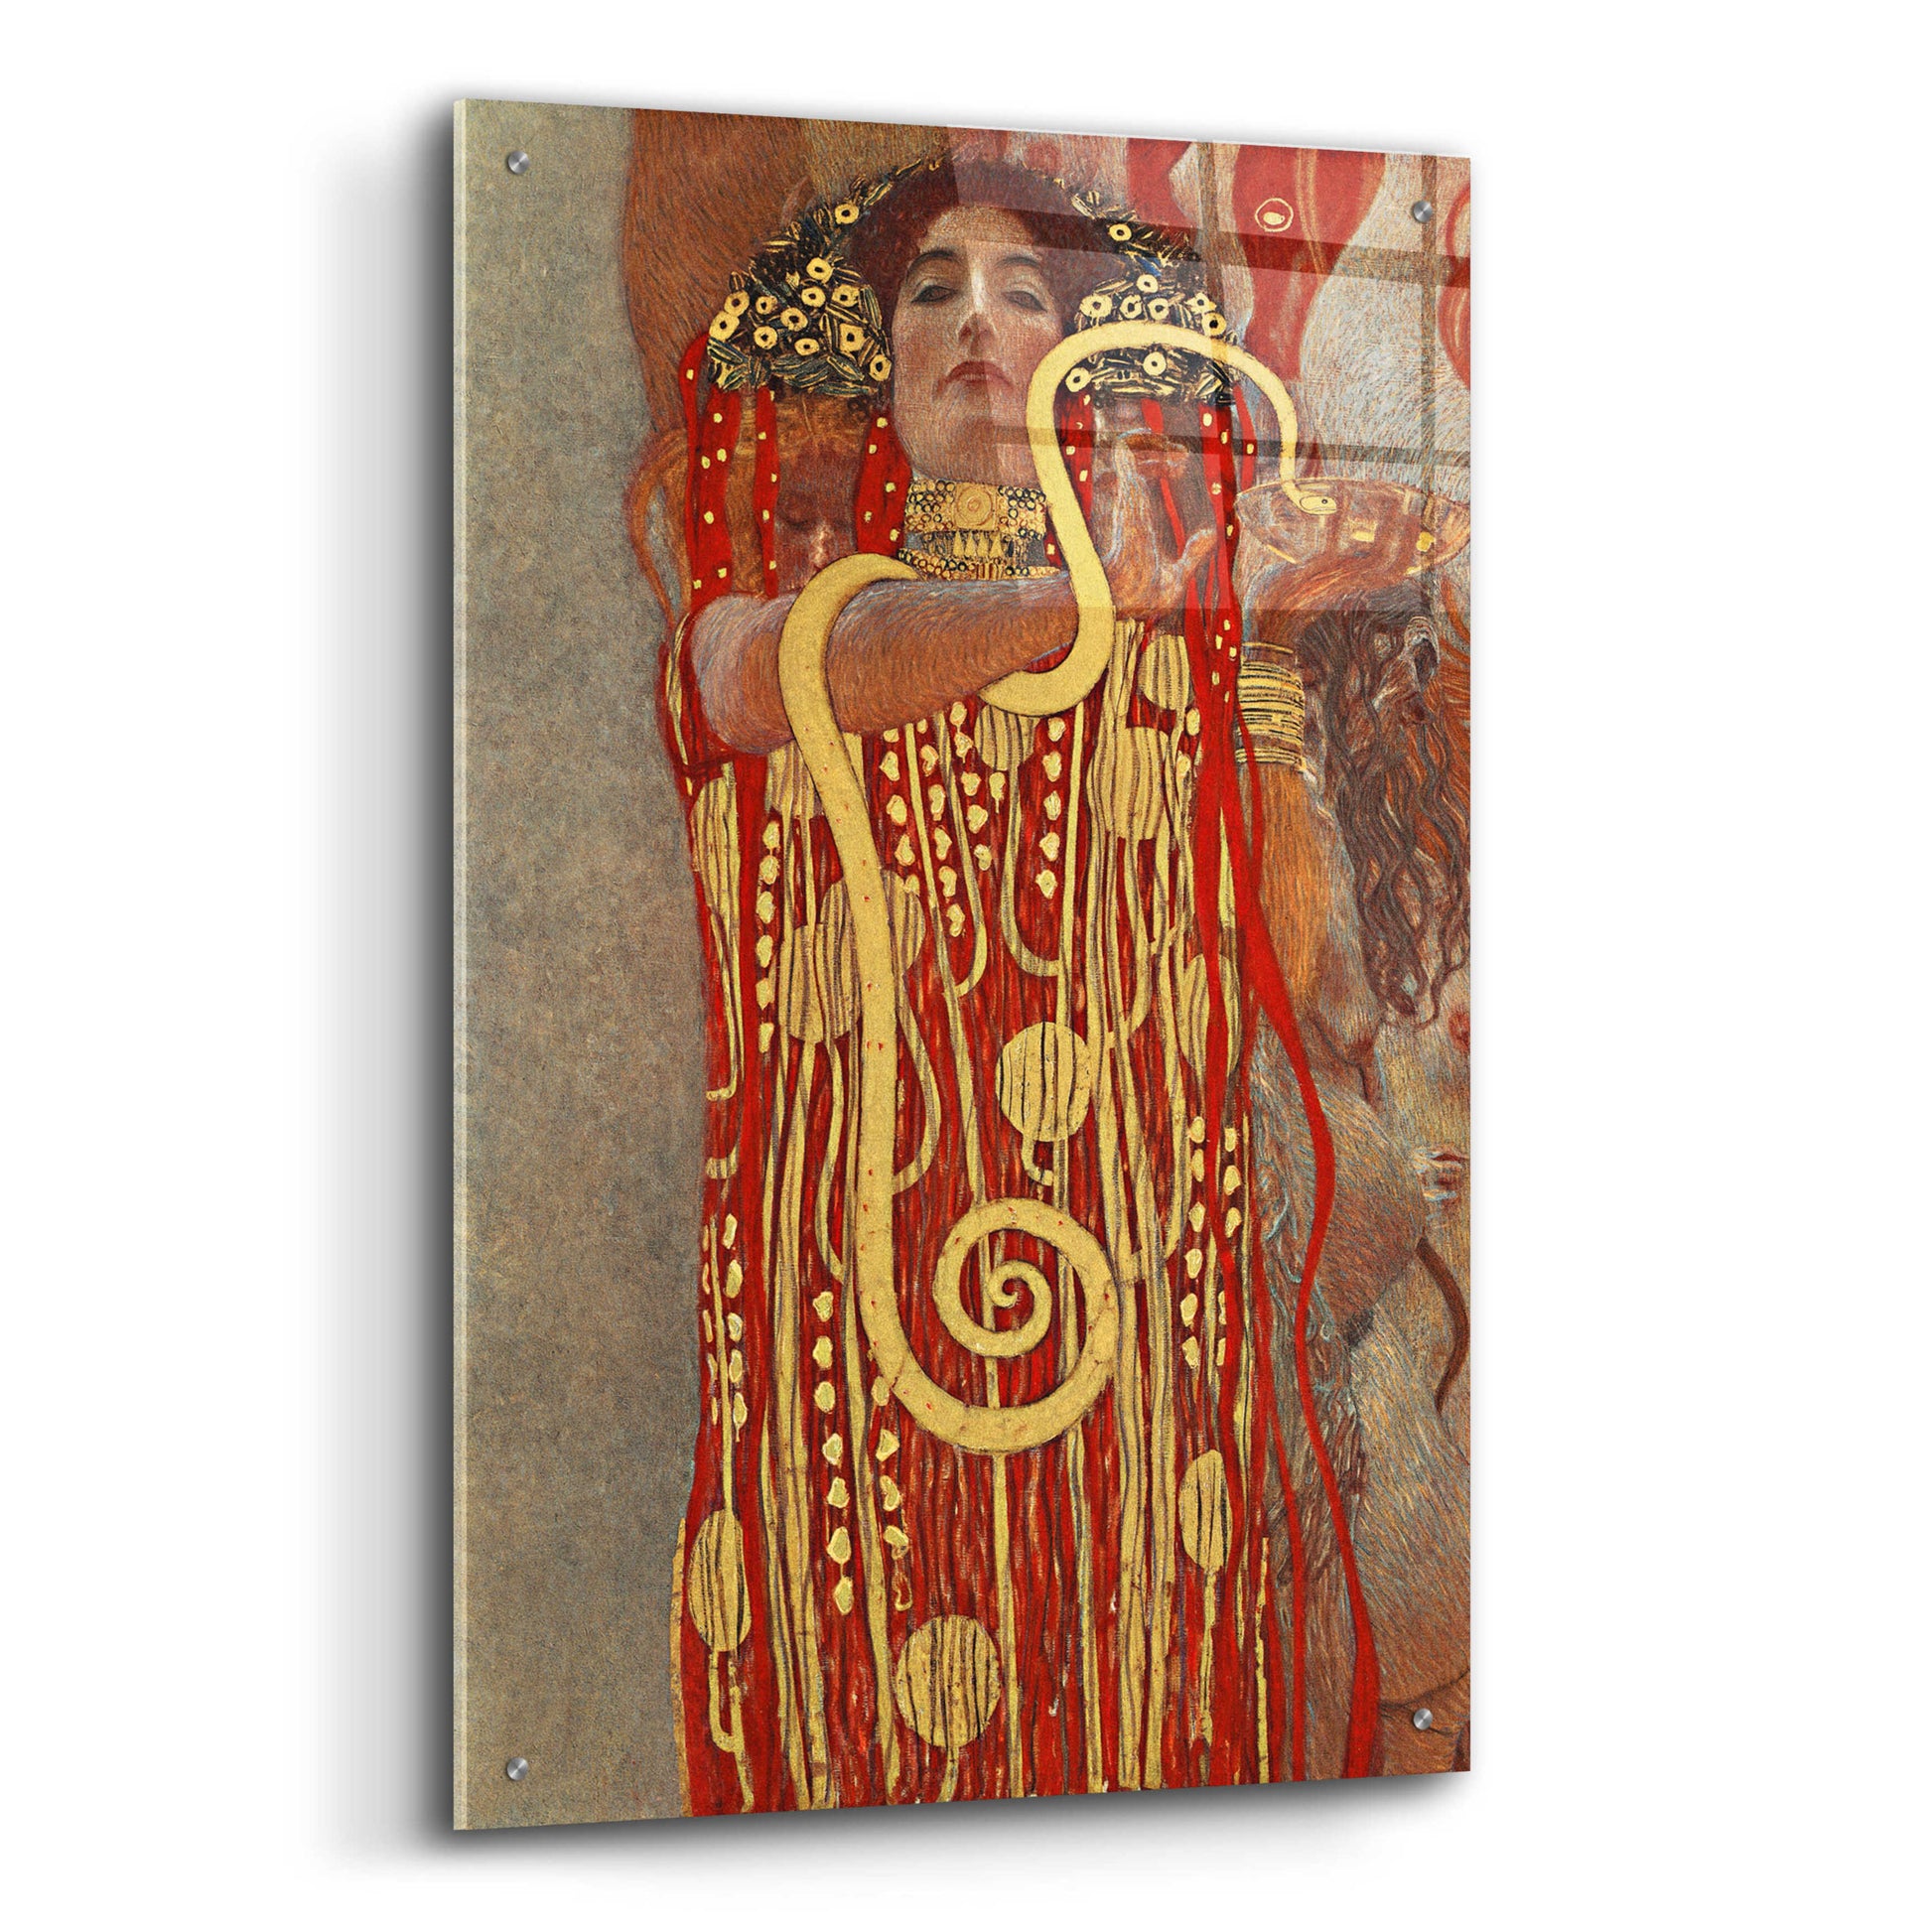 Epic Art 'Hygieia' by Gustav Klimt, Acrylic Glass Wall Art,24x36